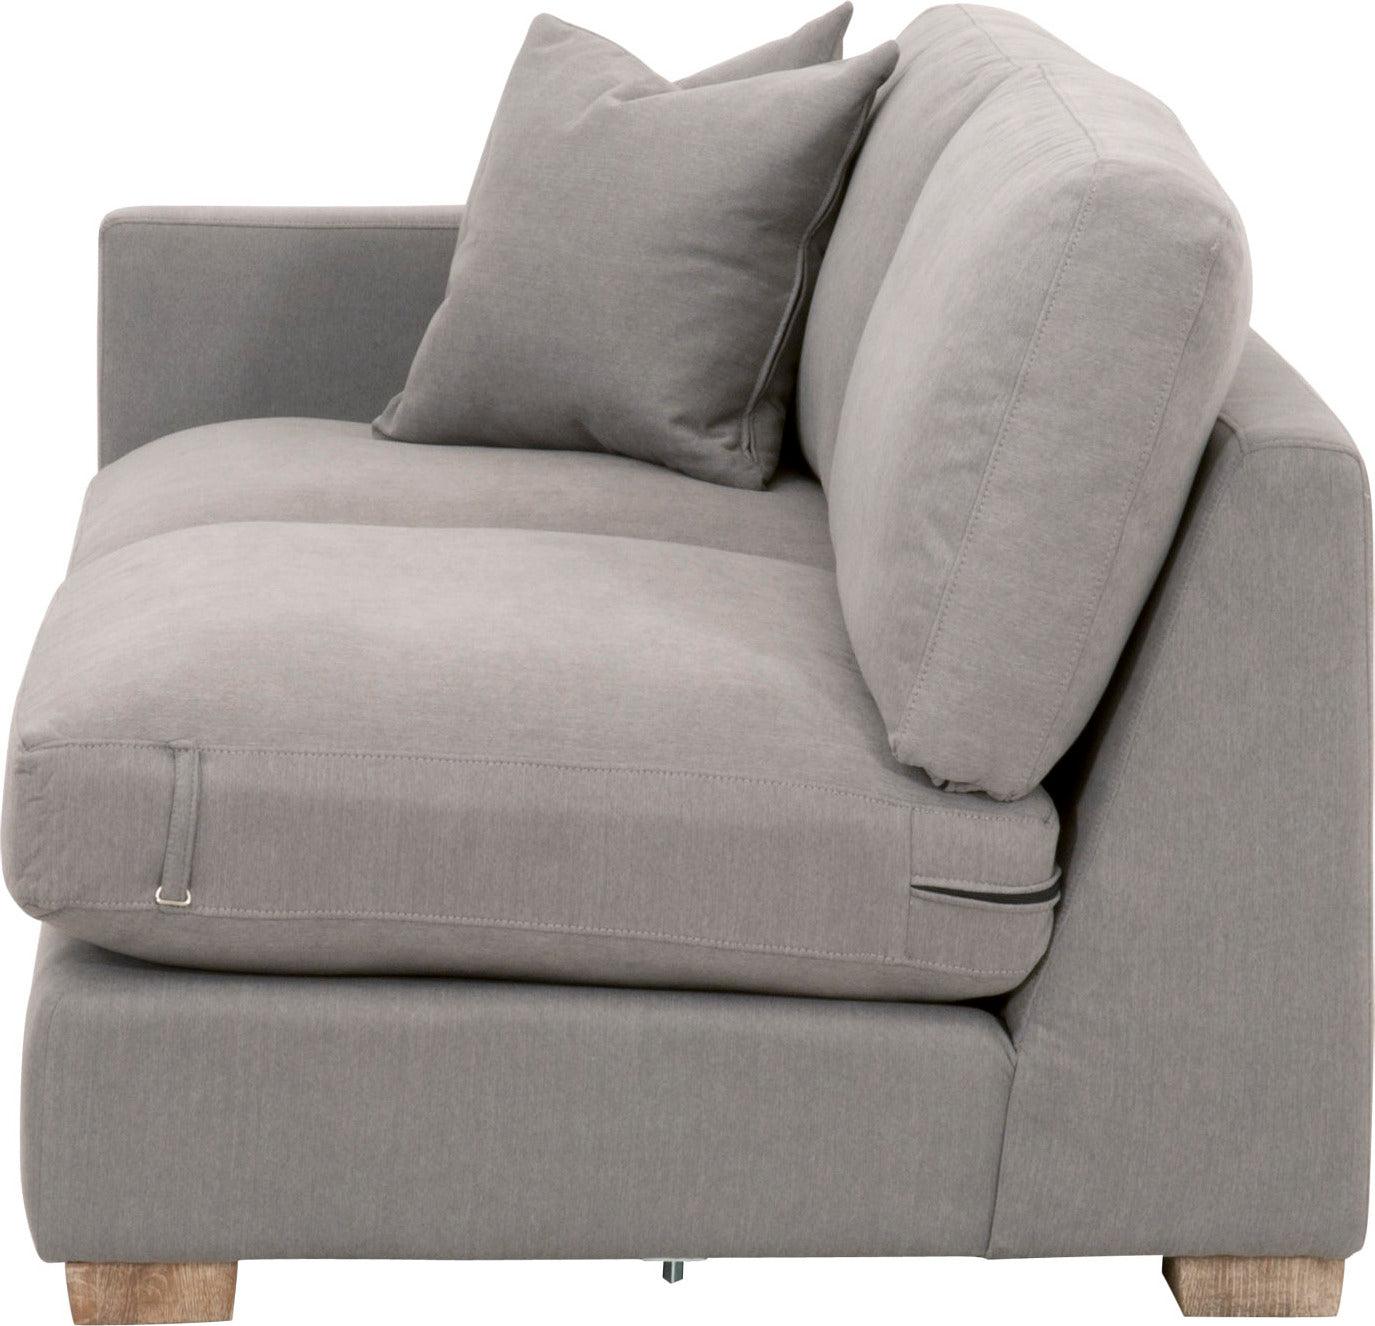 Hayden Light Gray Fabric Sofa, Living Room - Sofas